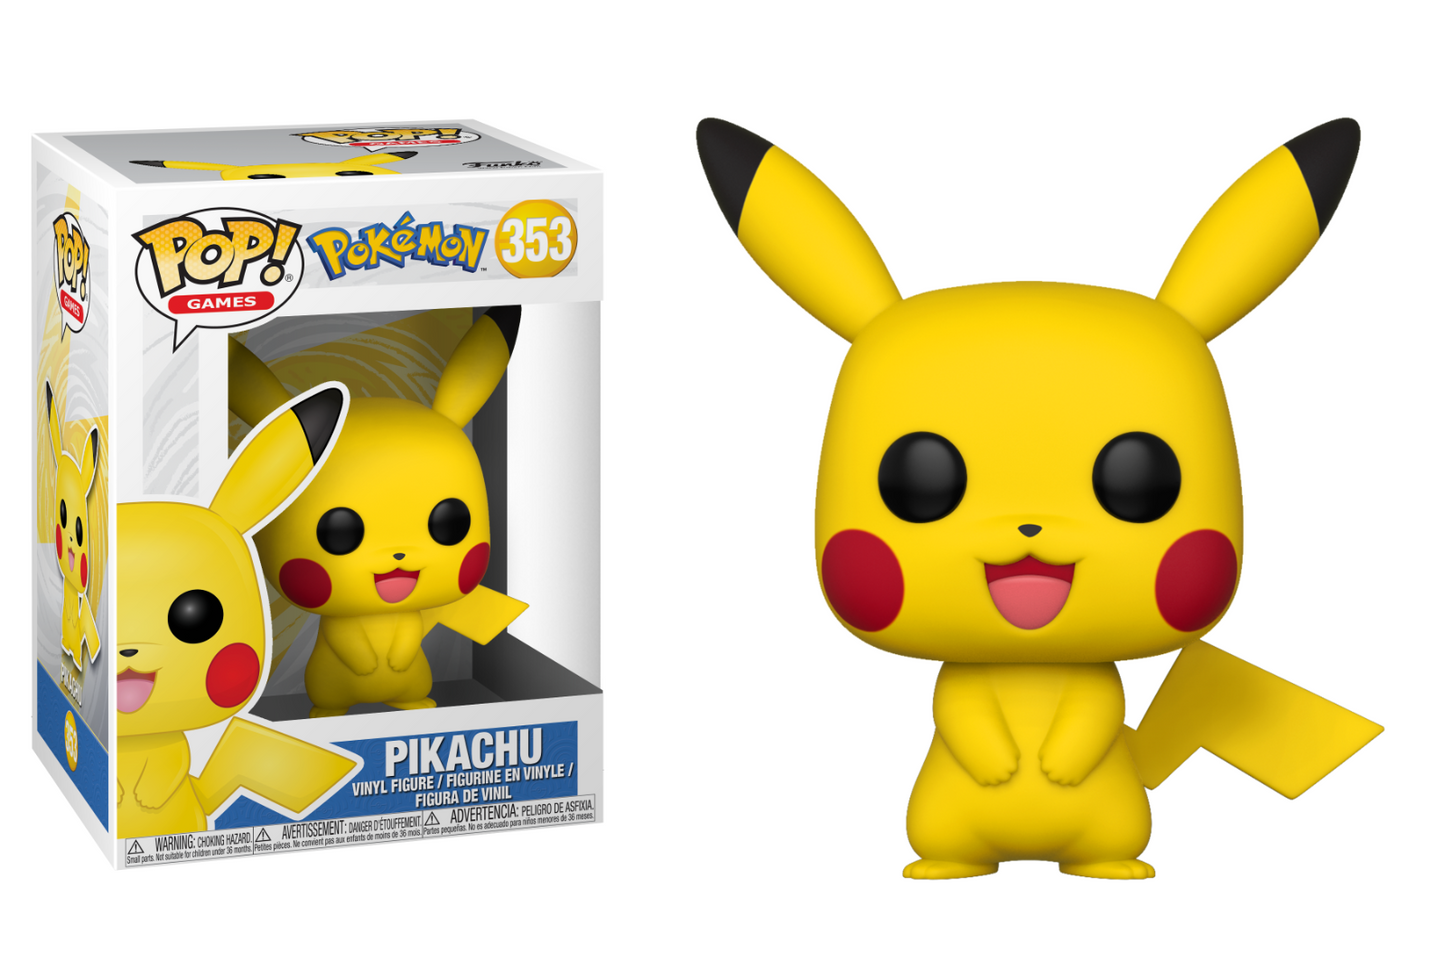 Pokemon - Pikachu 353